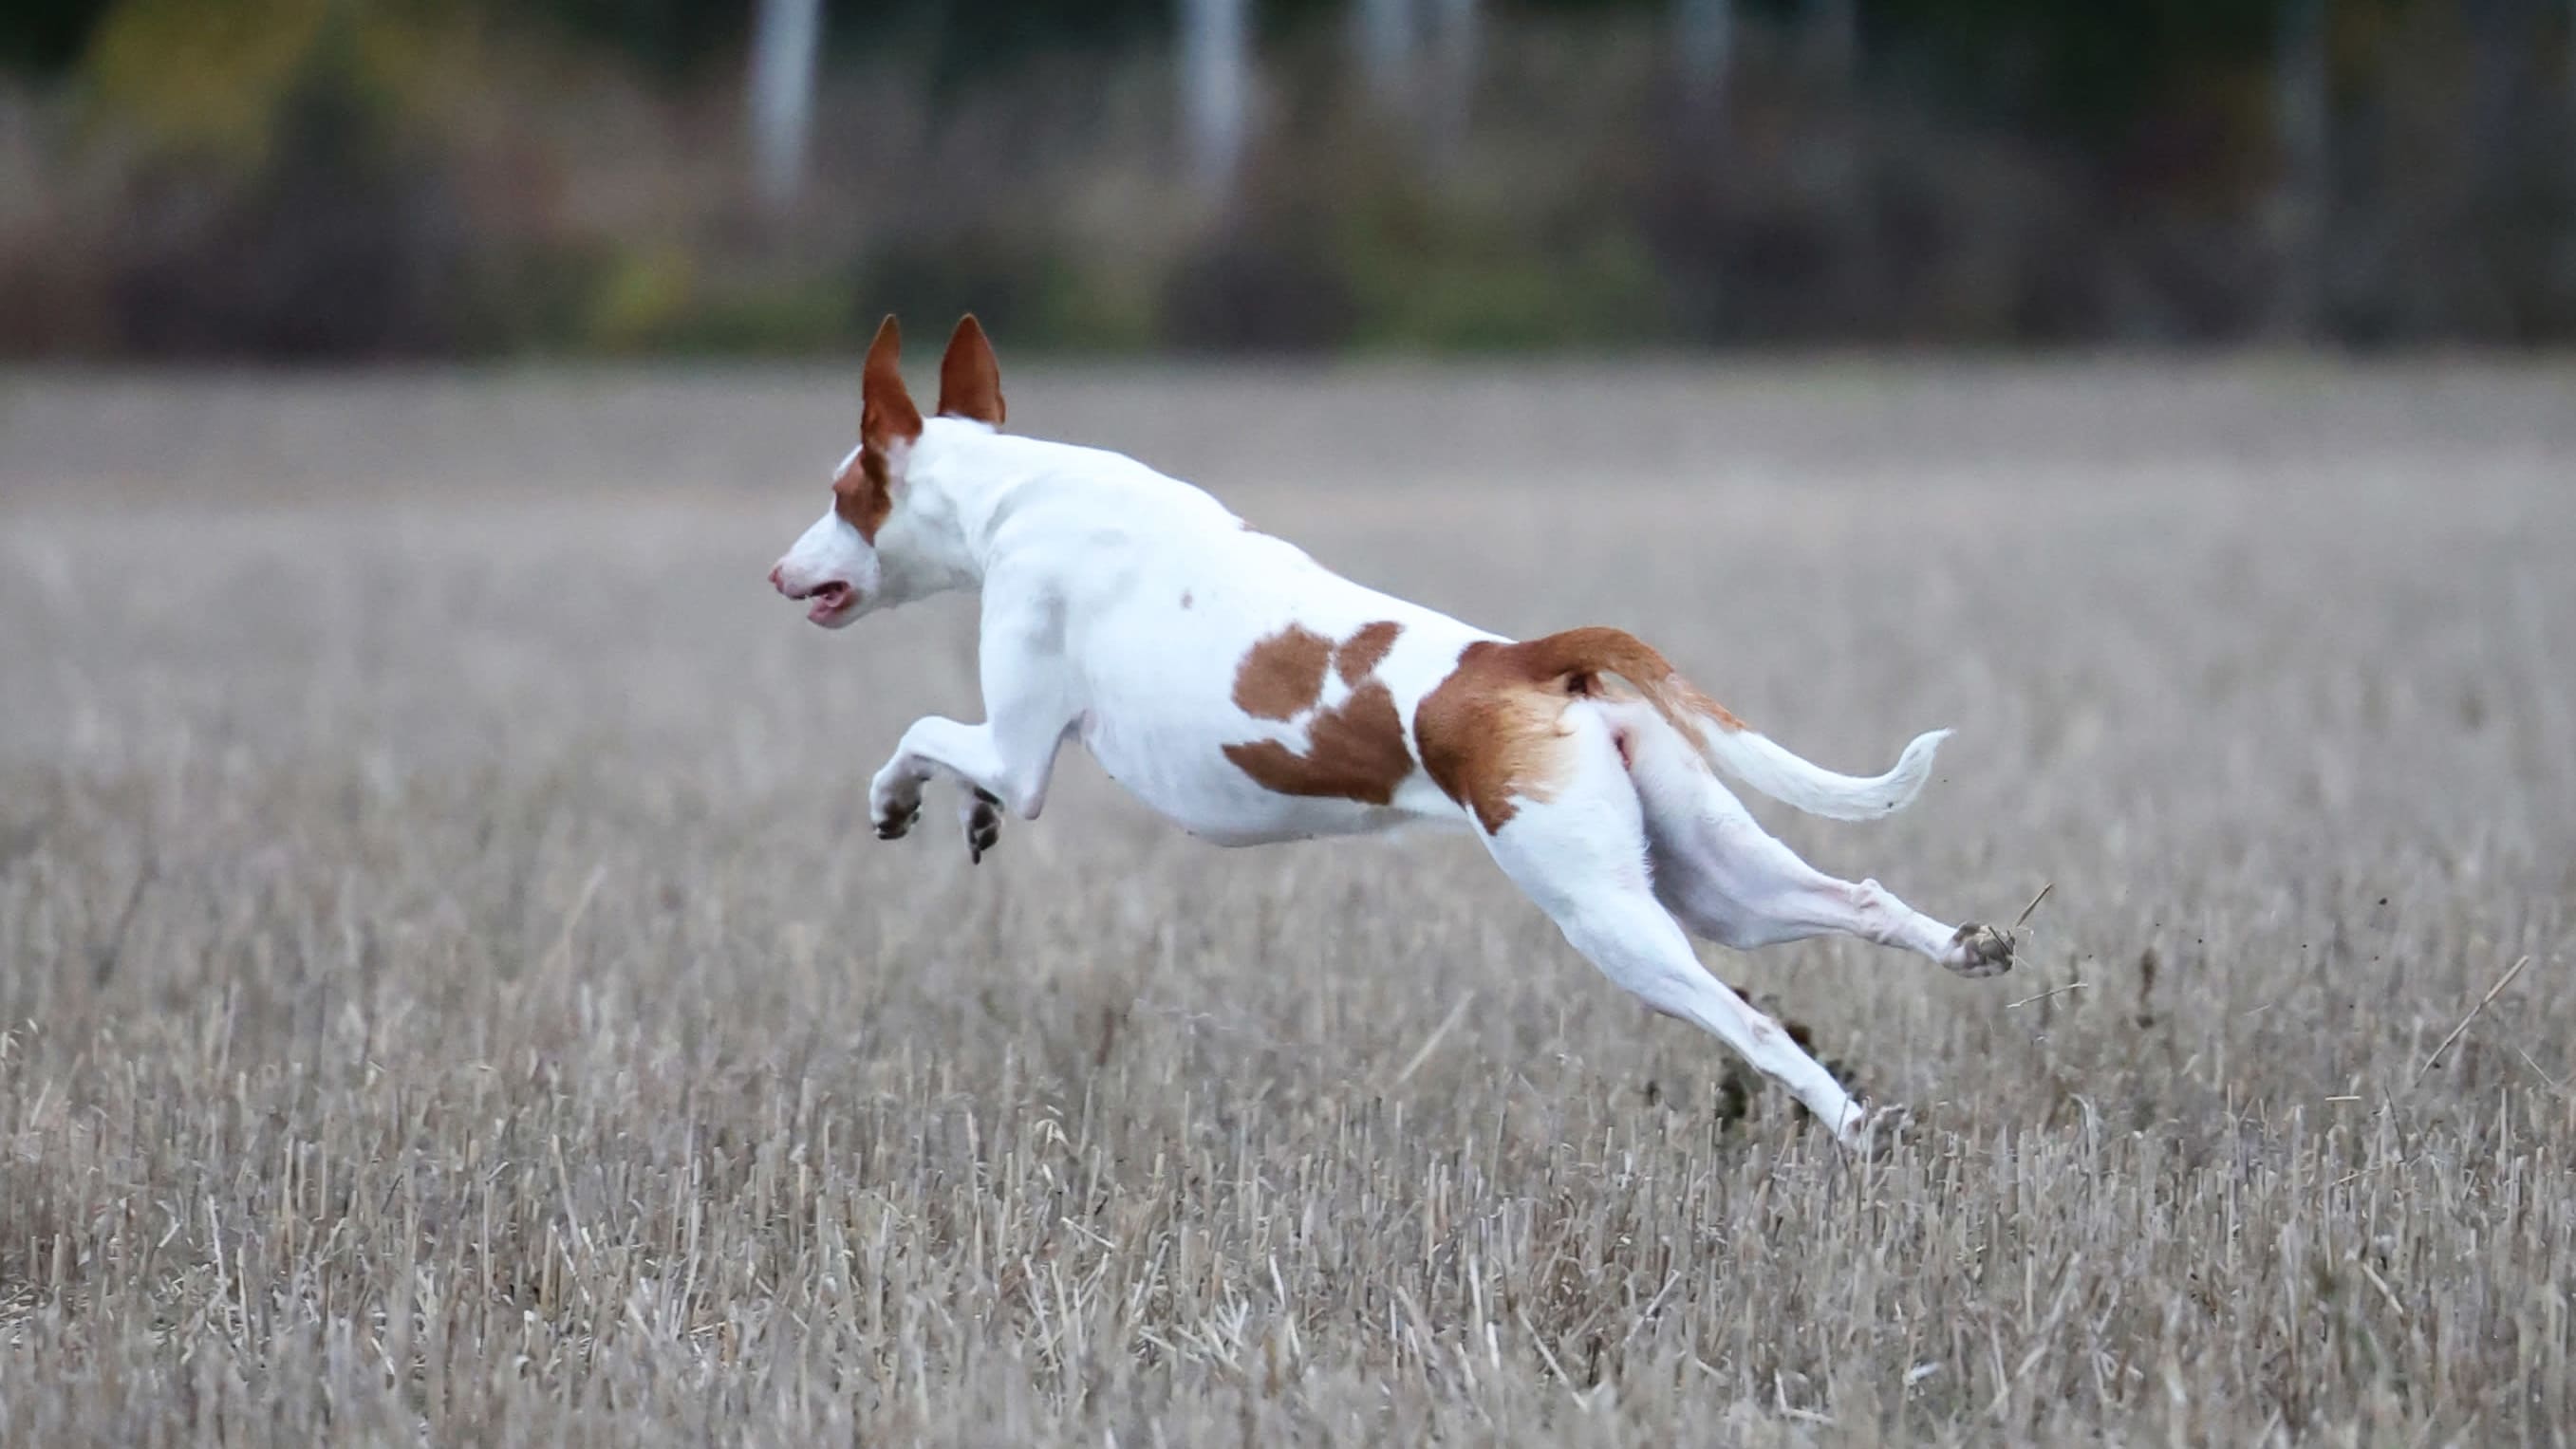 Juokseva koira pellolla, juuri hyppy kesken.